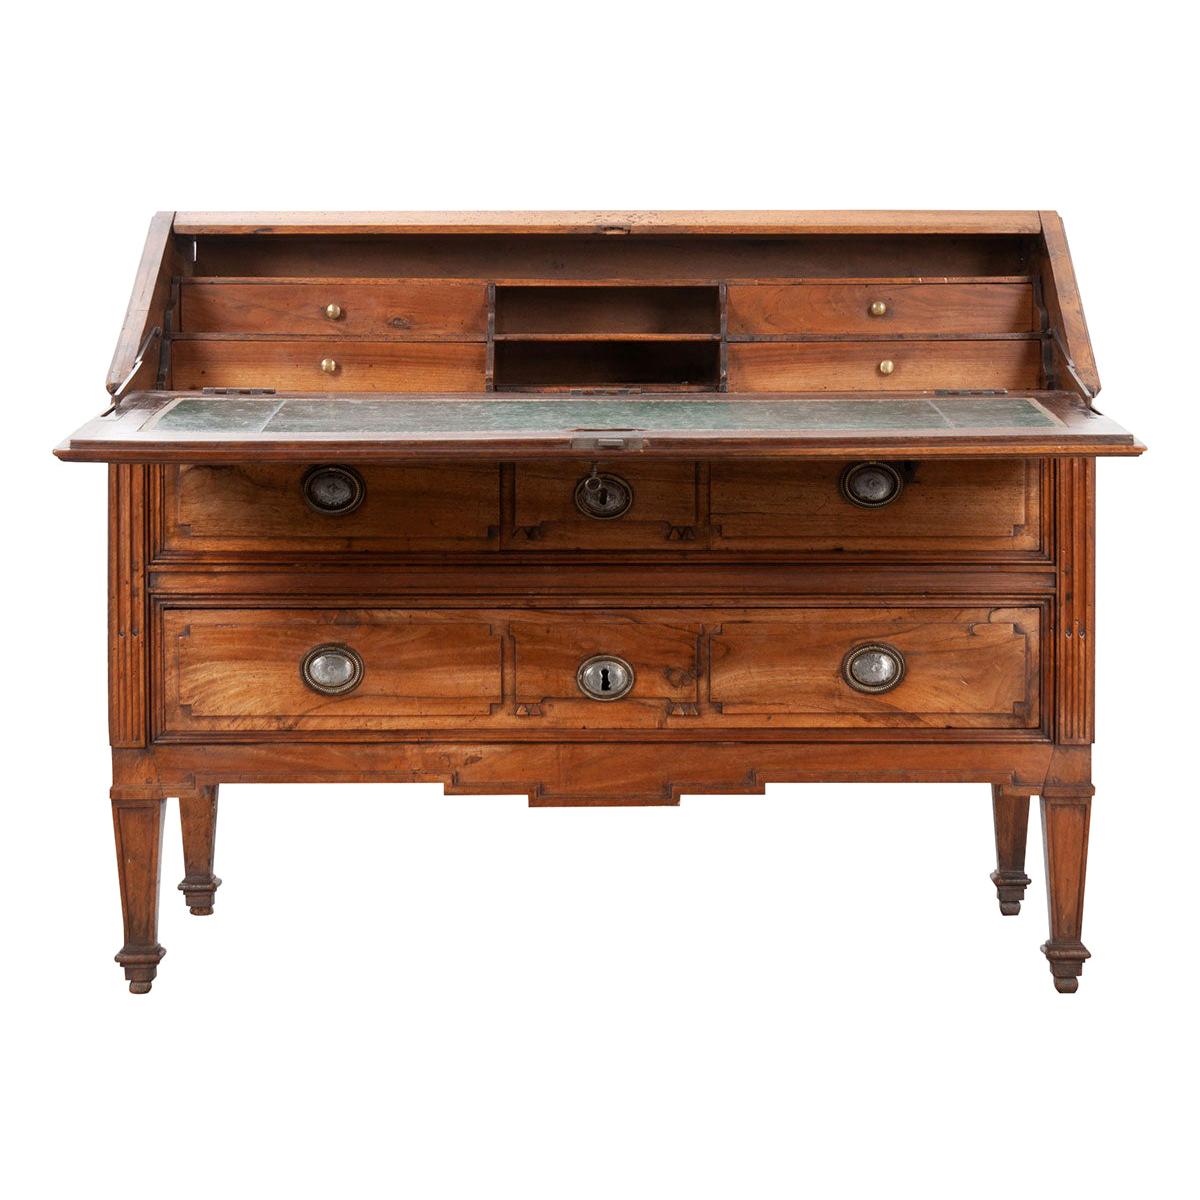 Schreibtisch mit ausklappbarer Vorderseite aus dem frühen 19. Jahrhundert